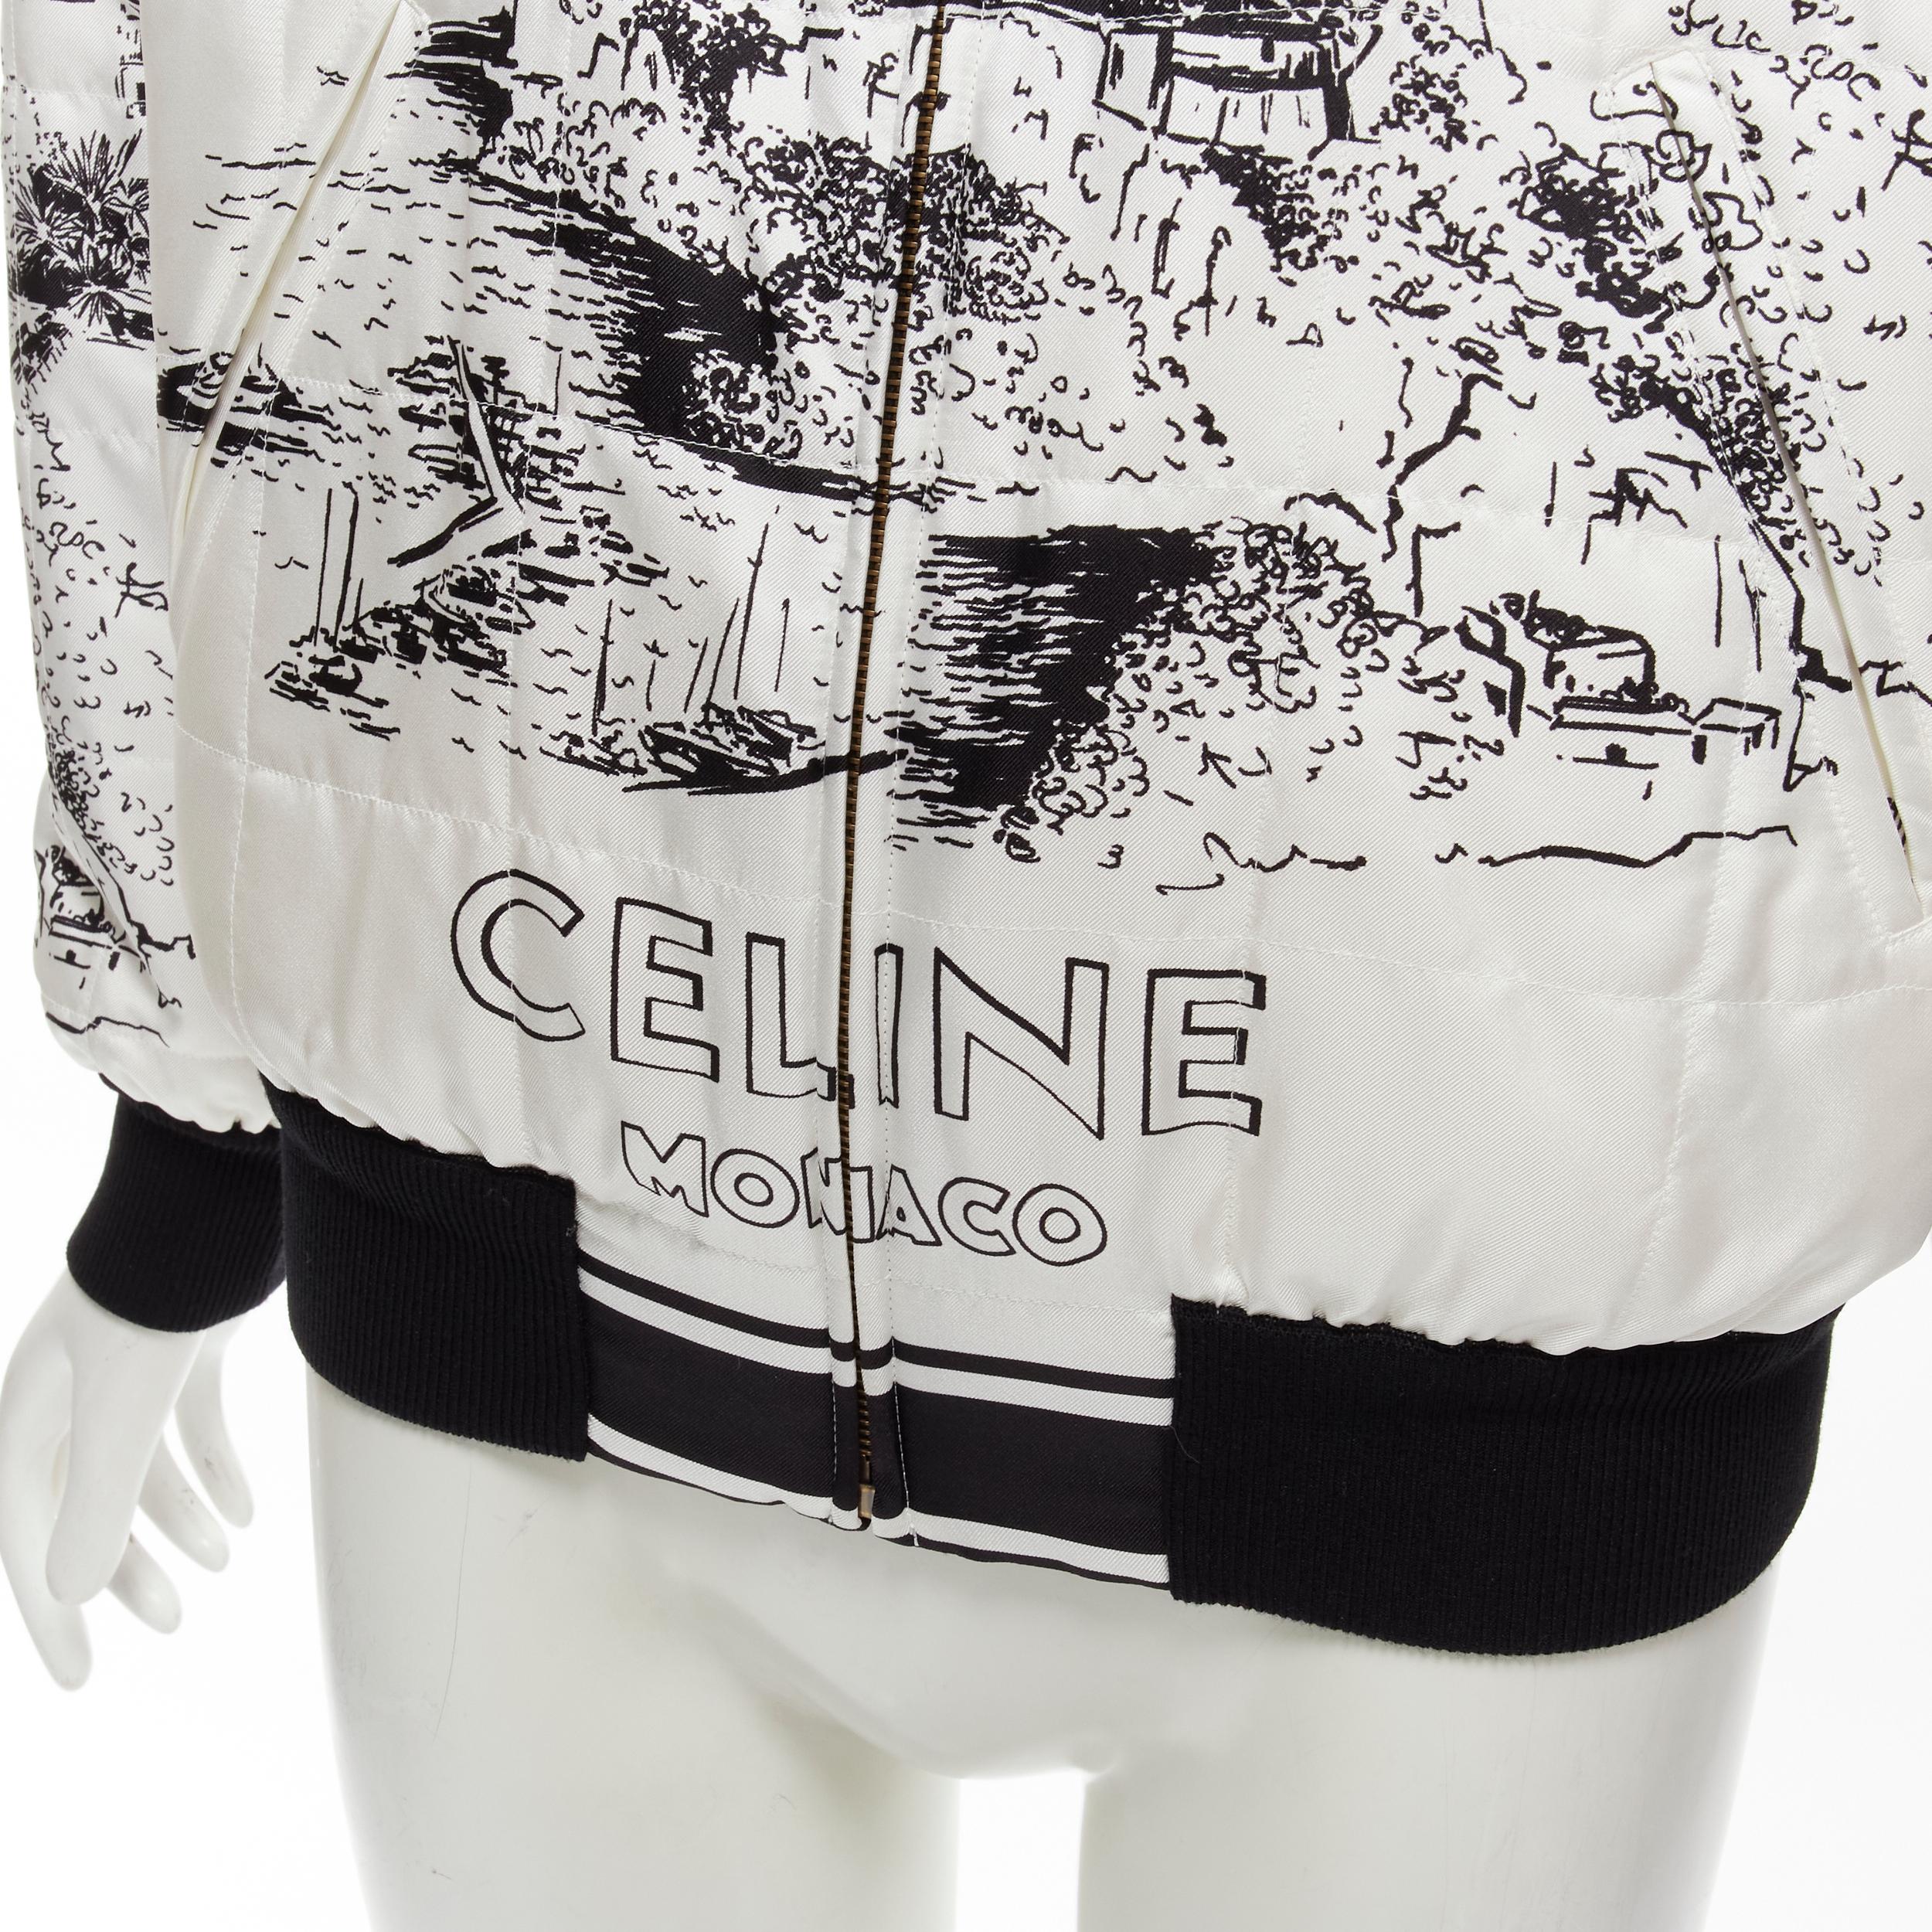 CELINE Hedi Slimane Runway Casaque white silk foulard reversible bomber FR34 For Sale 3